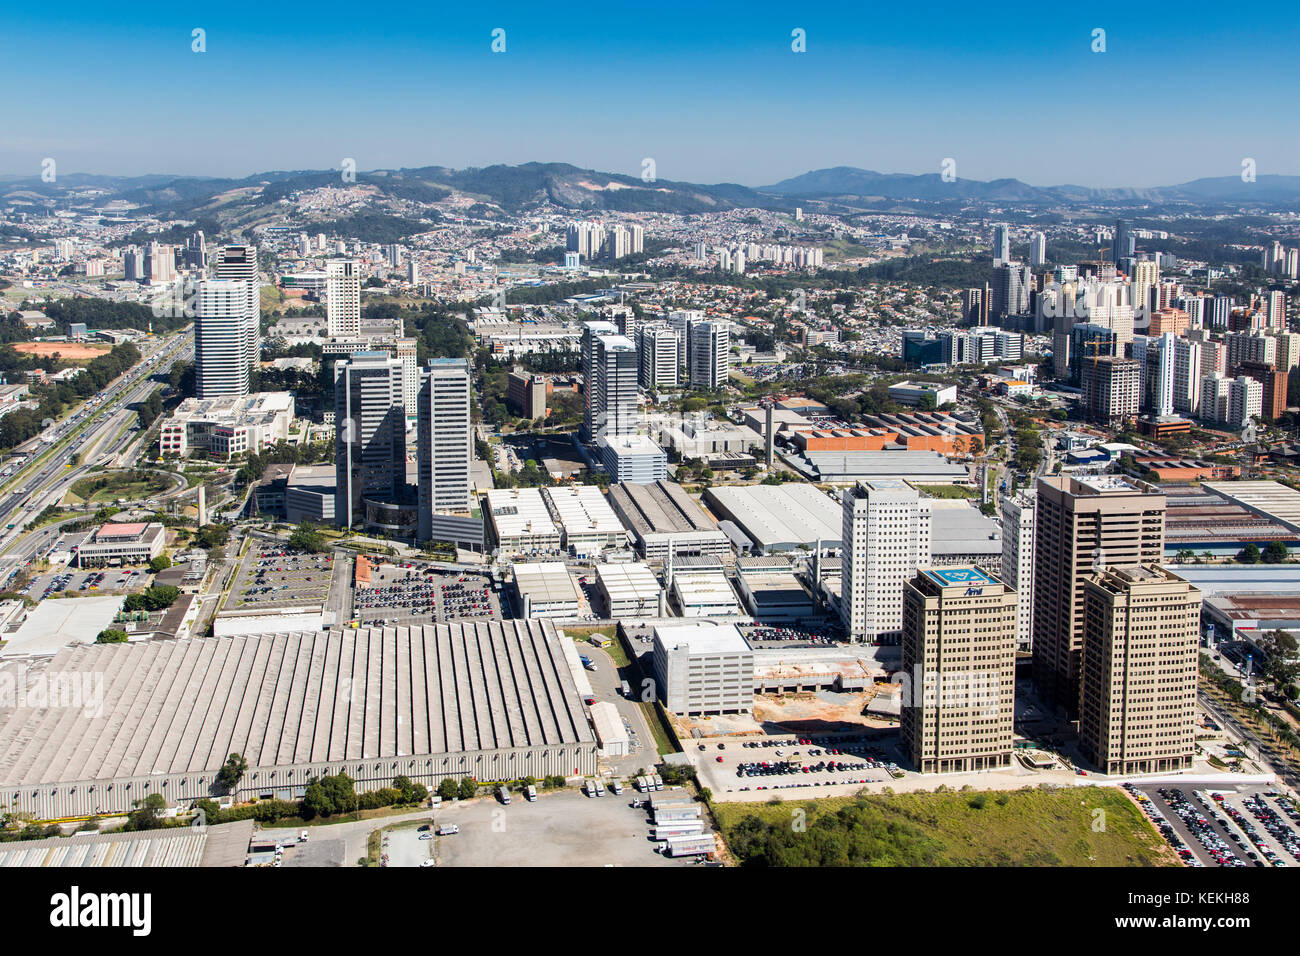 Vue aérienne d'Alphaville, région métropolitaine de Sao Paulo - Brésil Banque D'Images